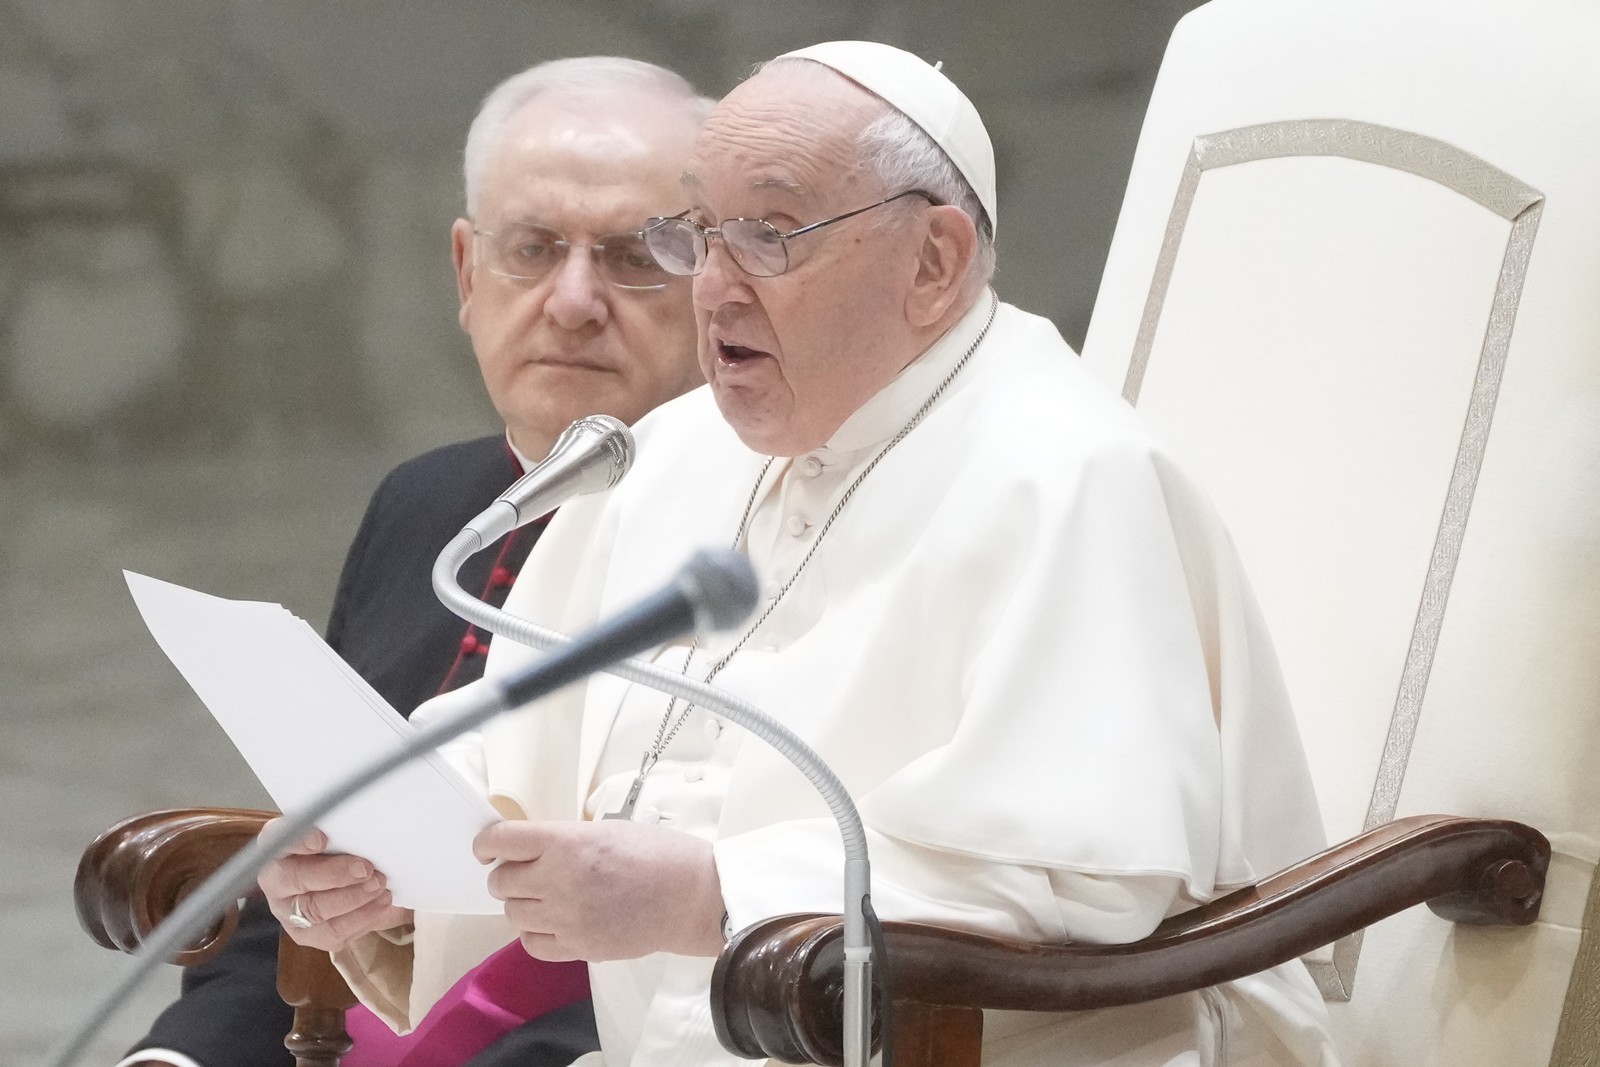 πάπας: αντιδρούν αν ευλογήσω έναν ομοφυλόφιλο, κι όχι έναν επιχειρηματία που εκμεταλλεύεται κόσμο